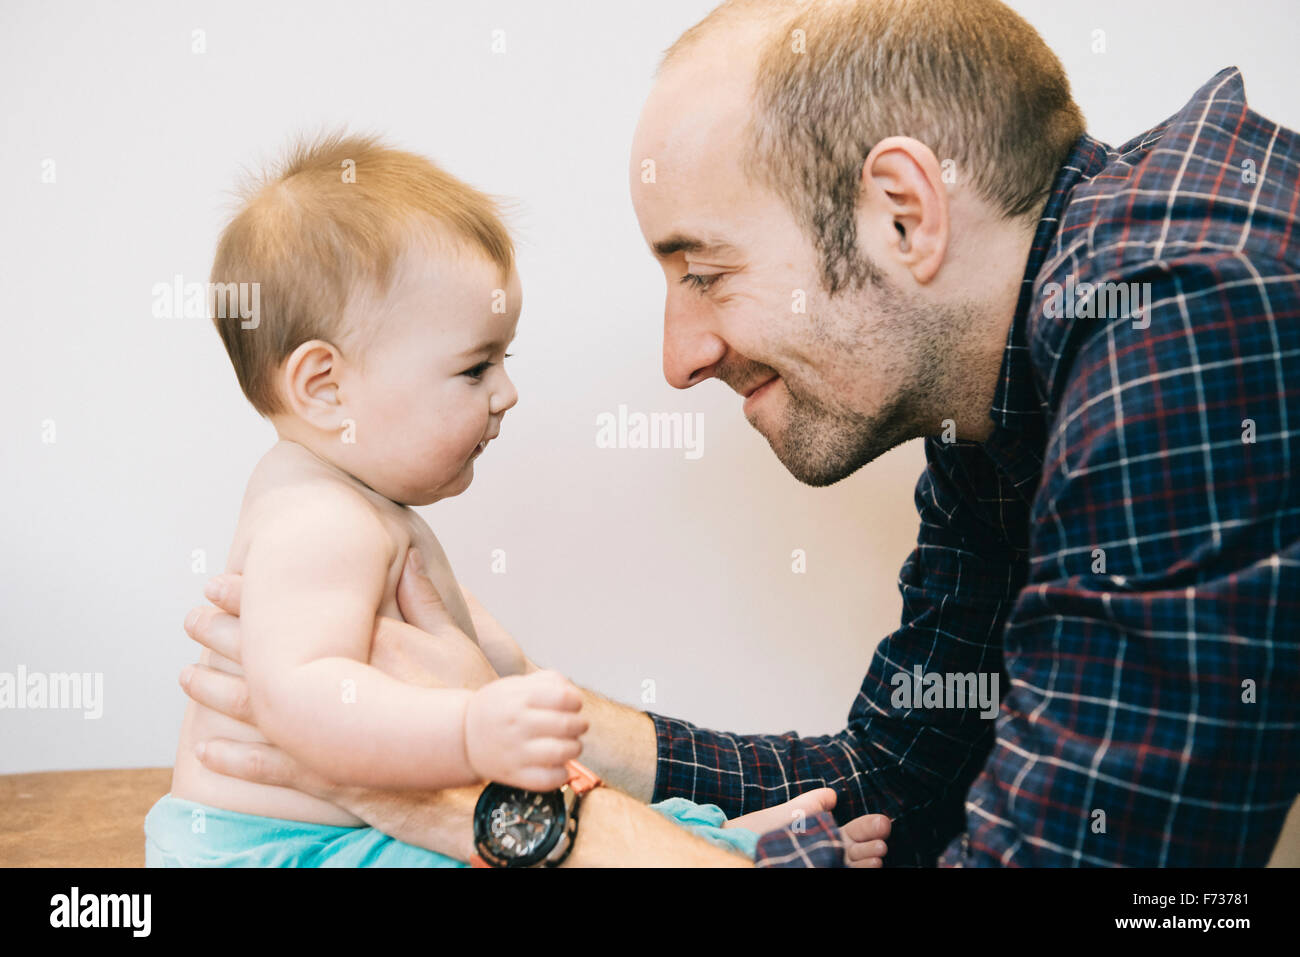 Una joven niña y su padre jugando cara a cara. Foto de stock